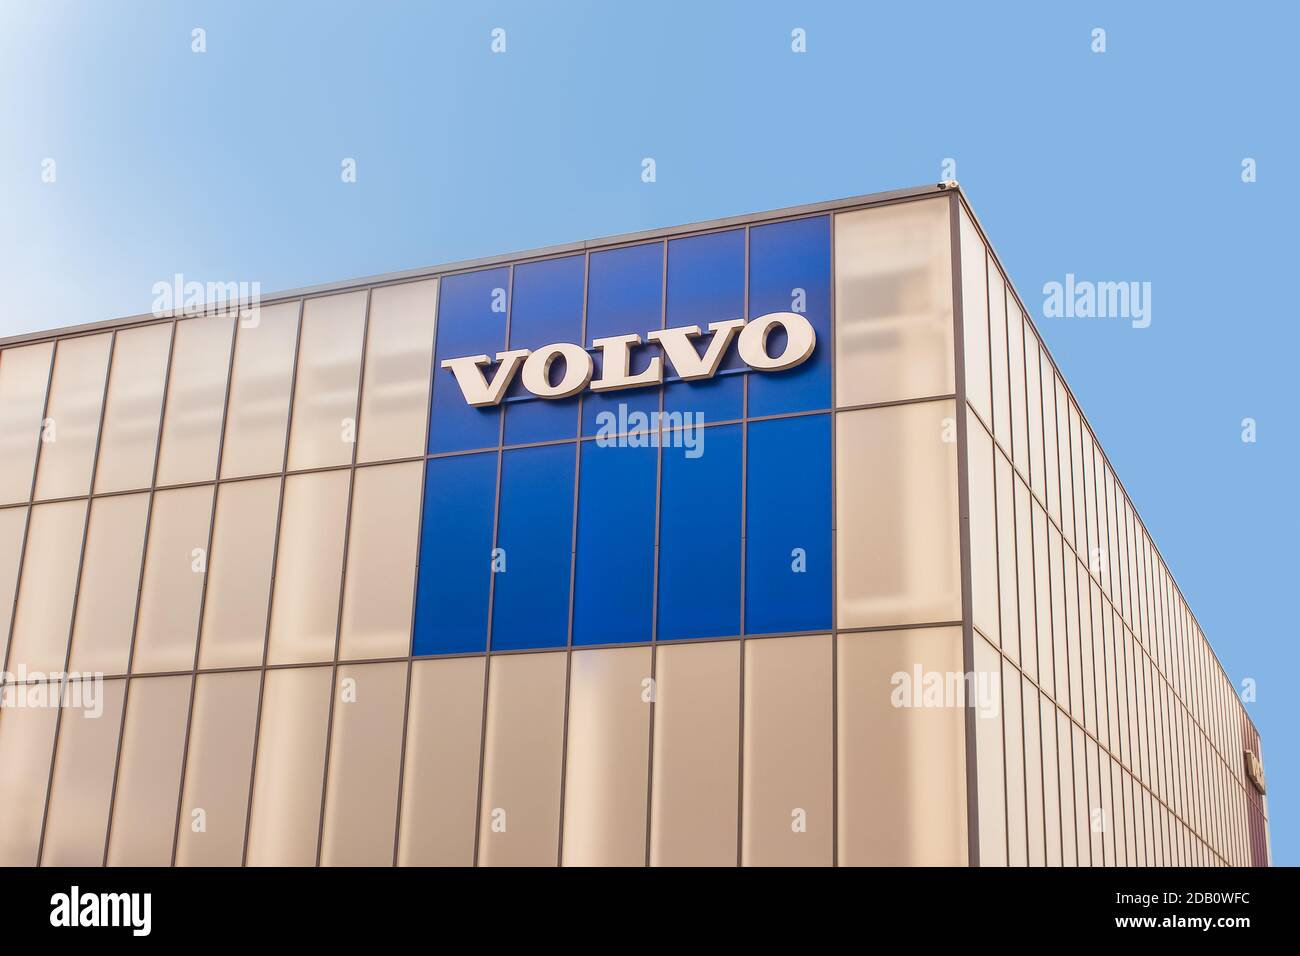 Kyiv, Ukraine - July 29, 2020: A Volvo logo seen on blue sky in Kiev, Ukraine on July 29, 2020 Stock Photo